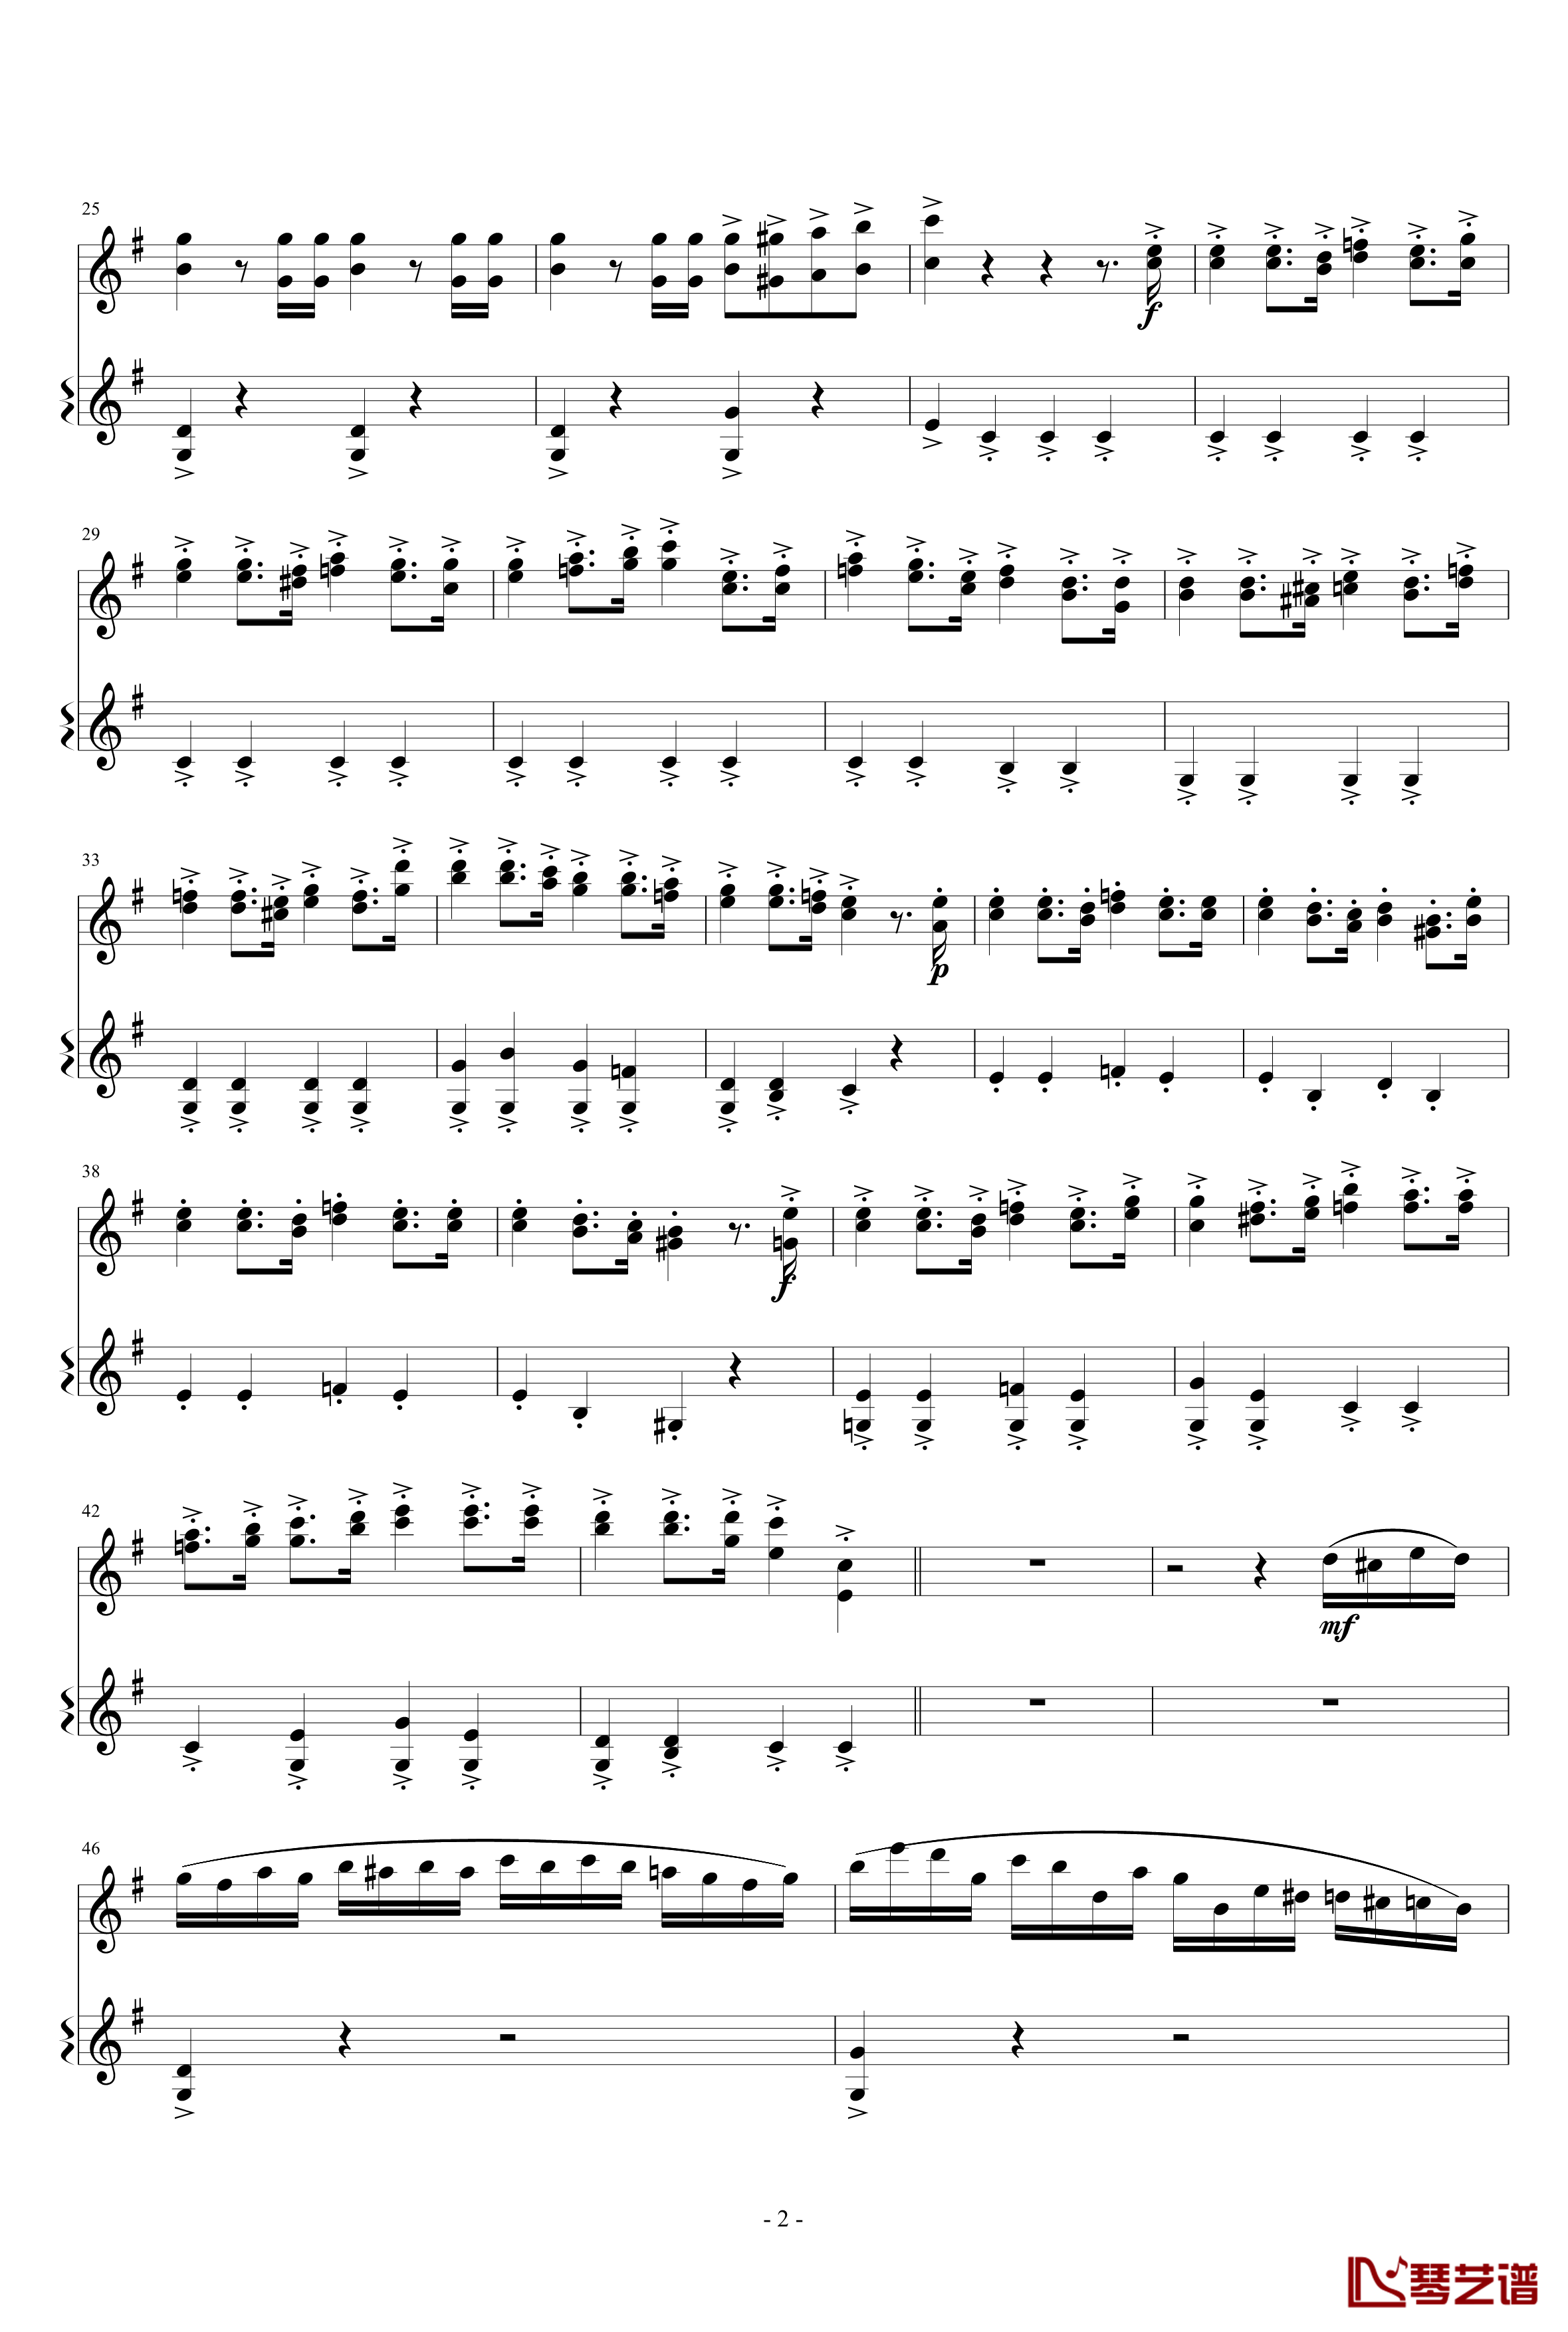 意大利国歌变奏曲钢琴谱-只修改了一个音-DXF2